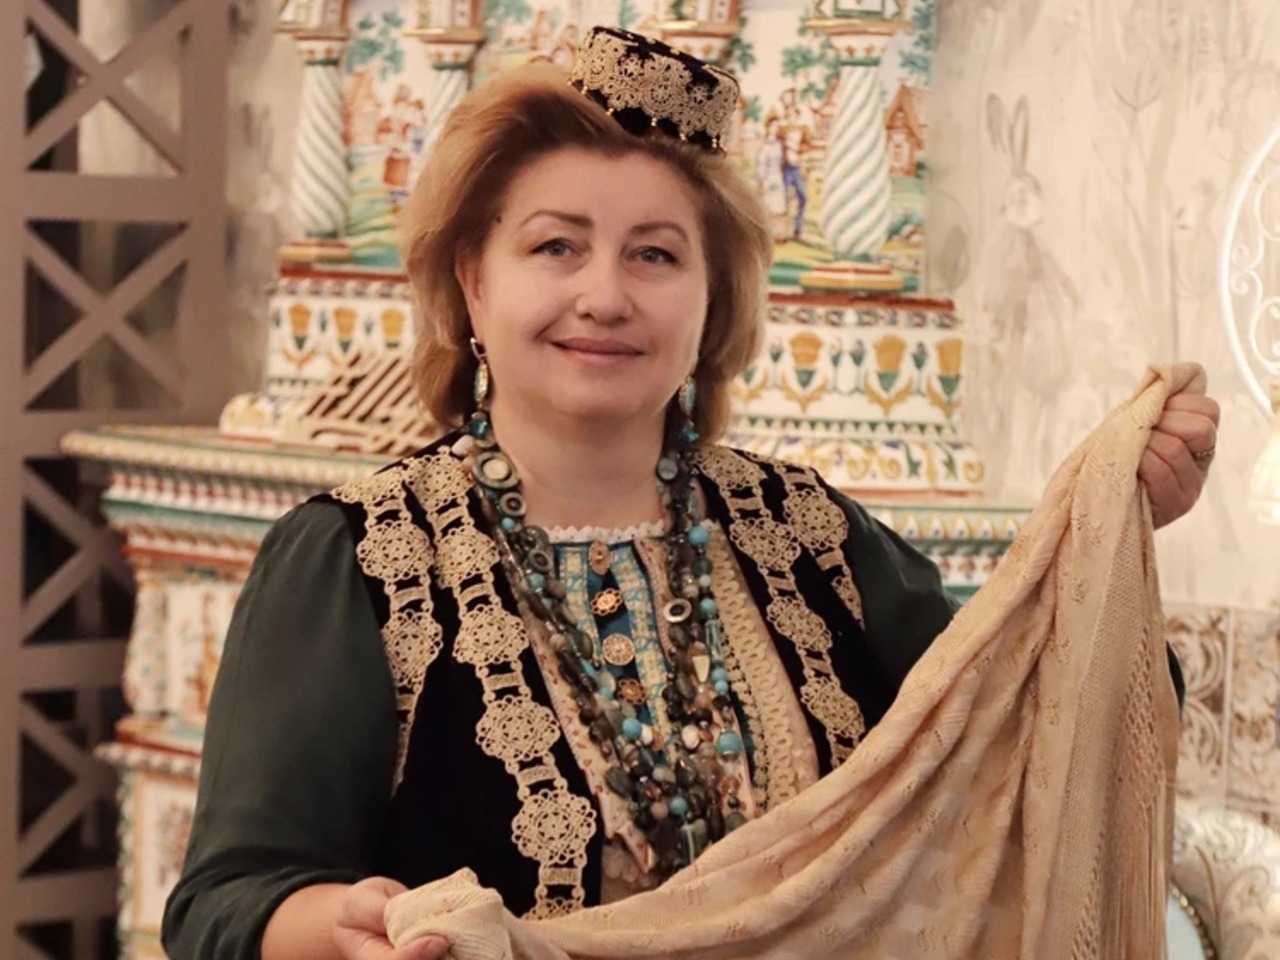 Авторский тур “Татарское ожерелье Тюмени” | Цена 6000₽, отзывы, описание экскурсии